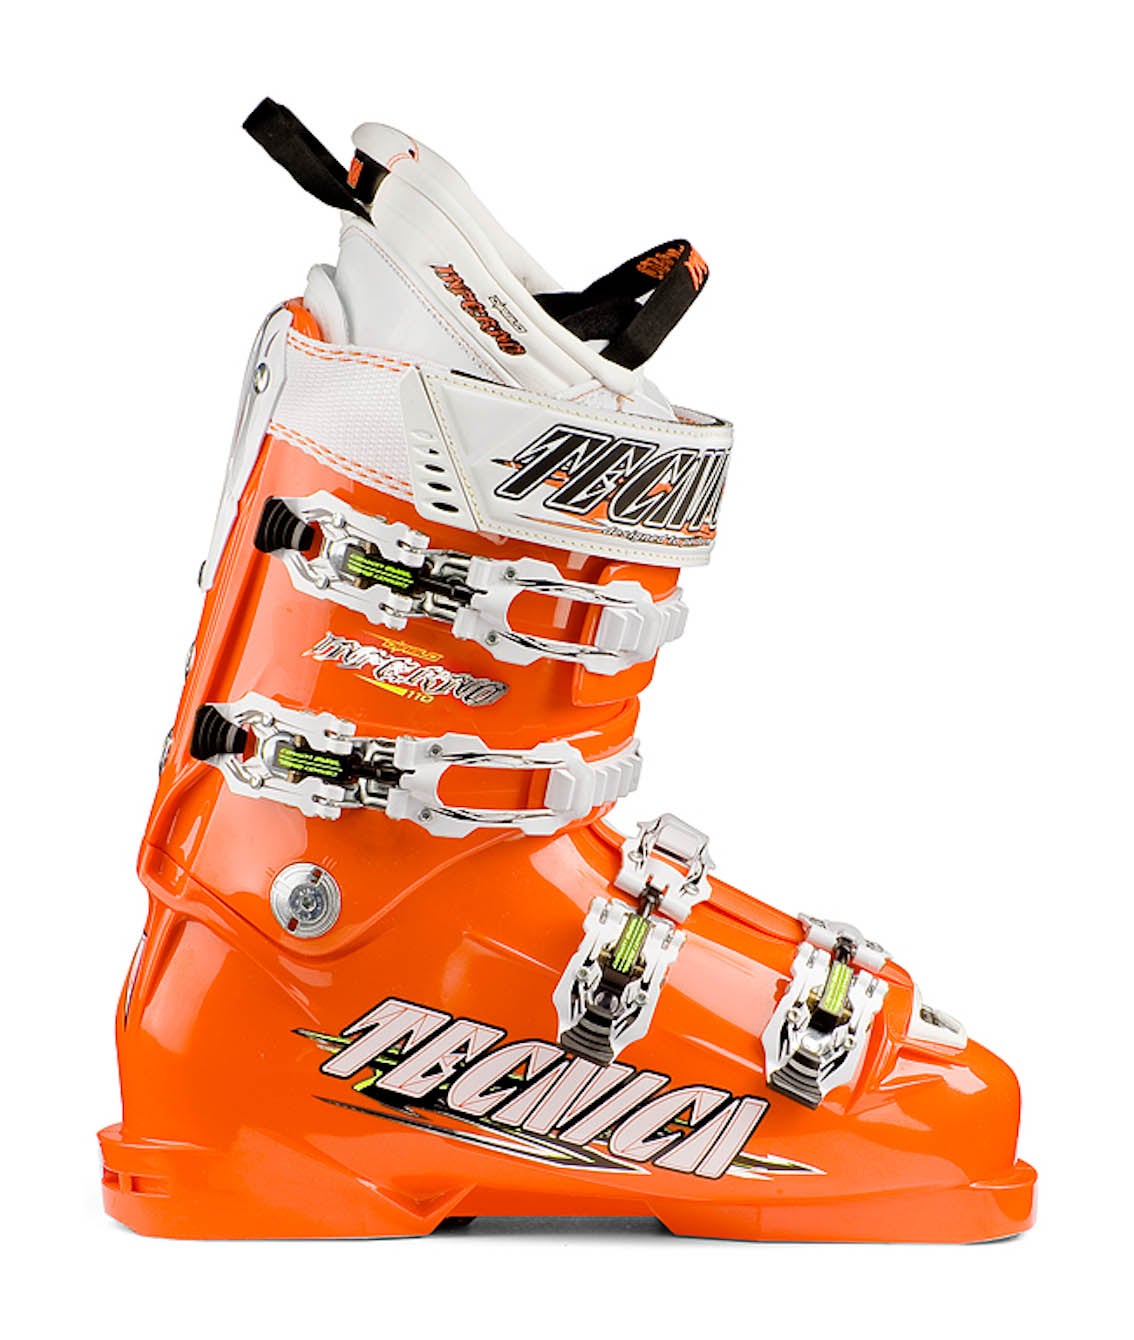 スキーブーツ Tecnica(テクニカ) ディアブロRace Pro 25.5 - スキー